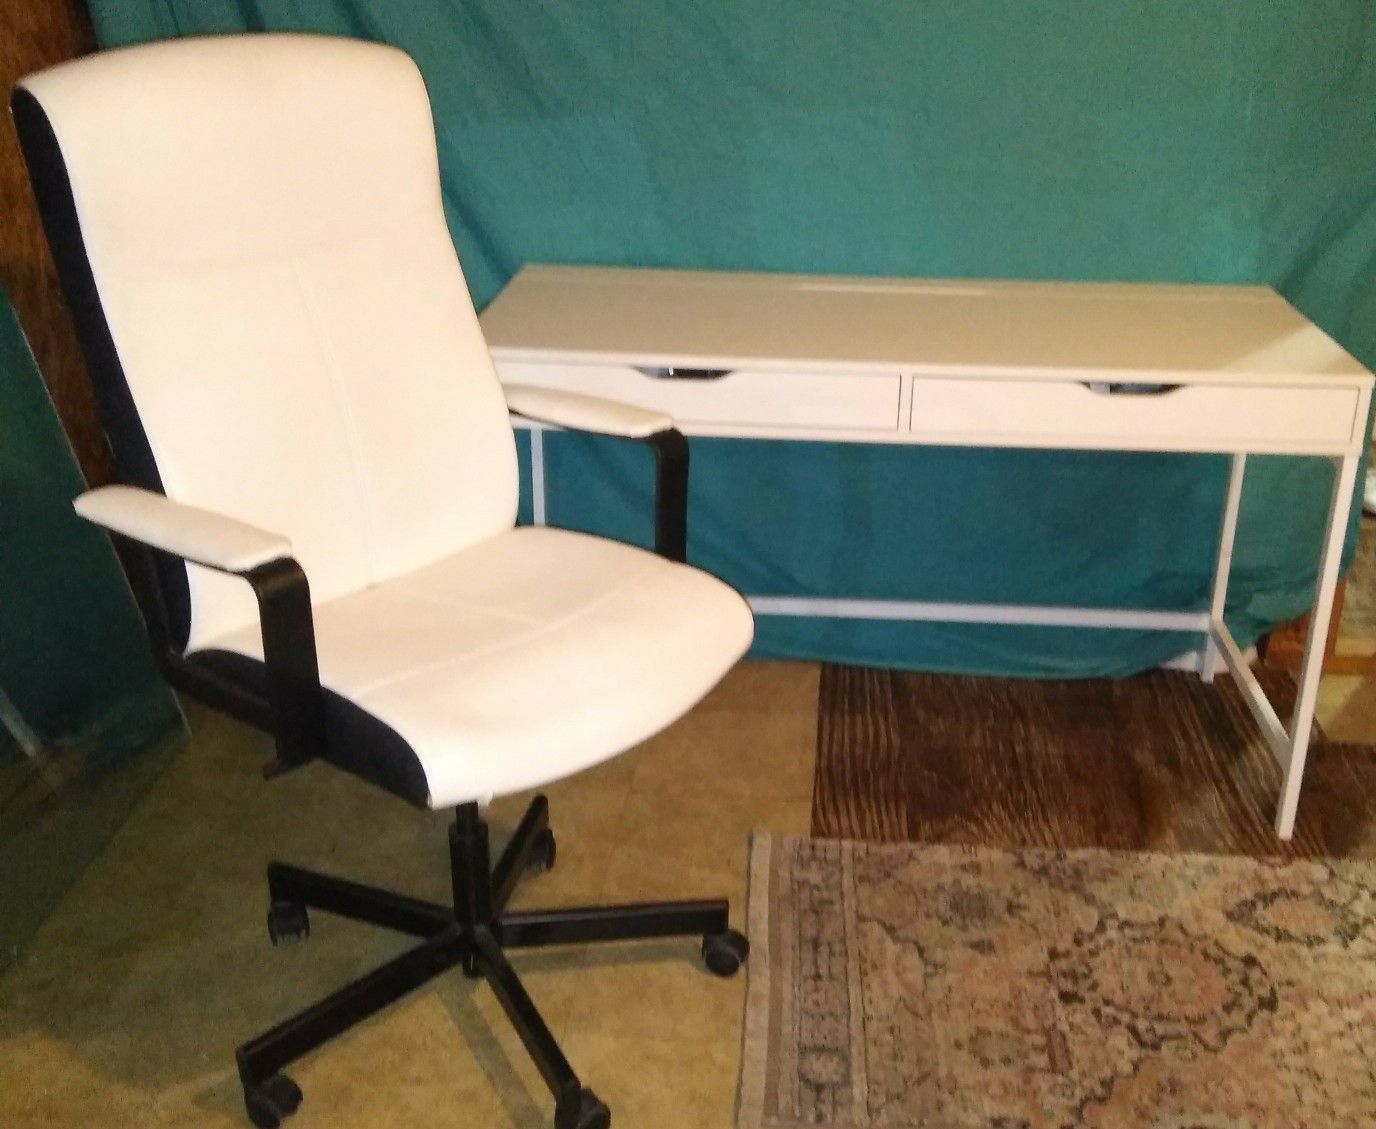 Heavy duty desk and swivel chair